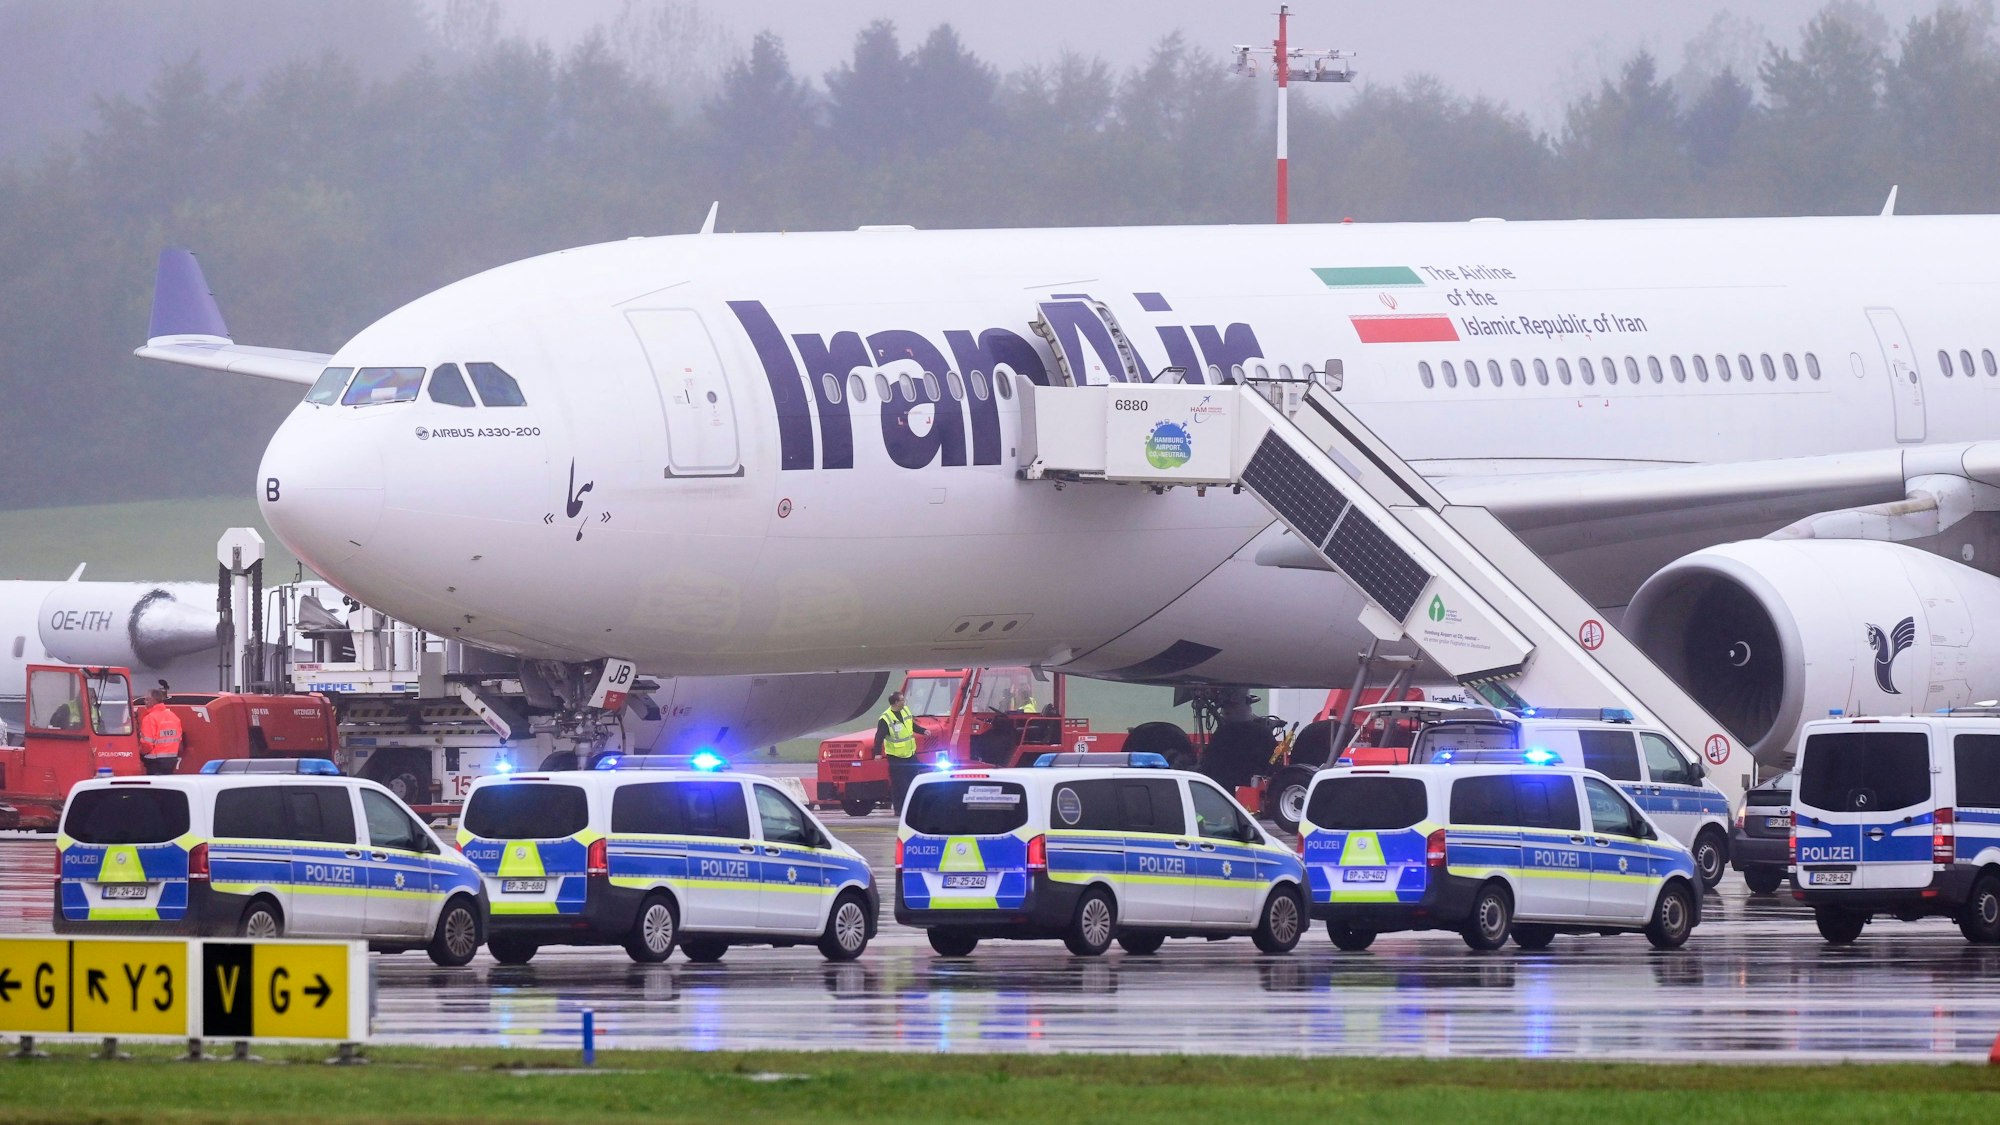 Die Bundespolizei durchsucht einen Airbus A330 der iranischen Fluggesellschaft IranAir am Flughafen Hamburg. Das Flugzeug war nach einer Anschlagsdrohung evakuiert worden.